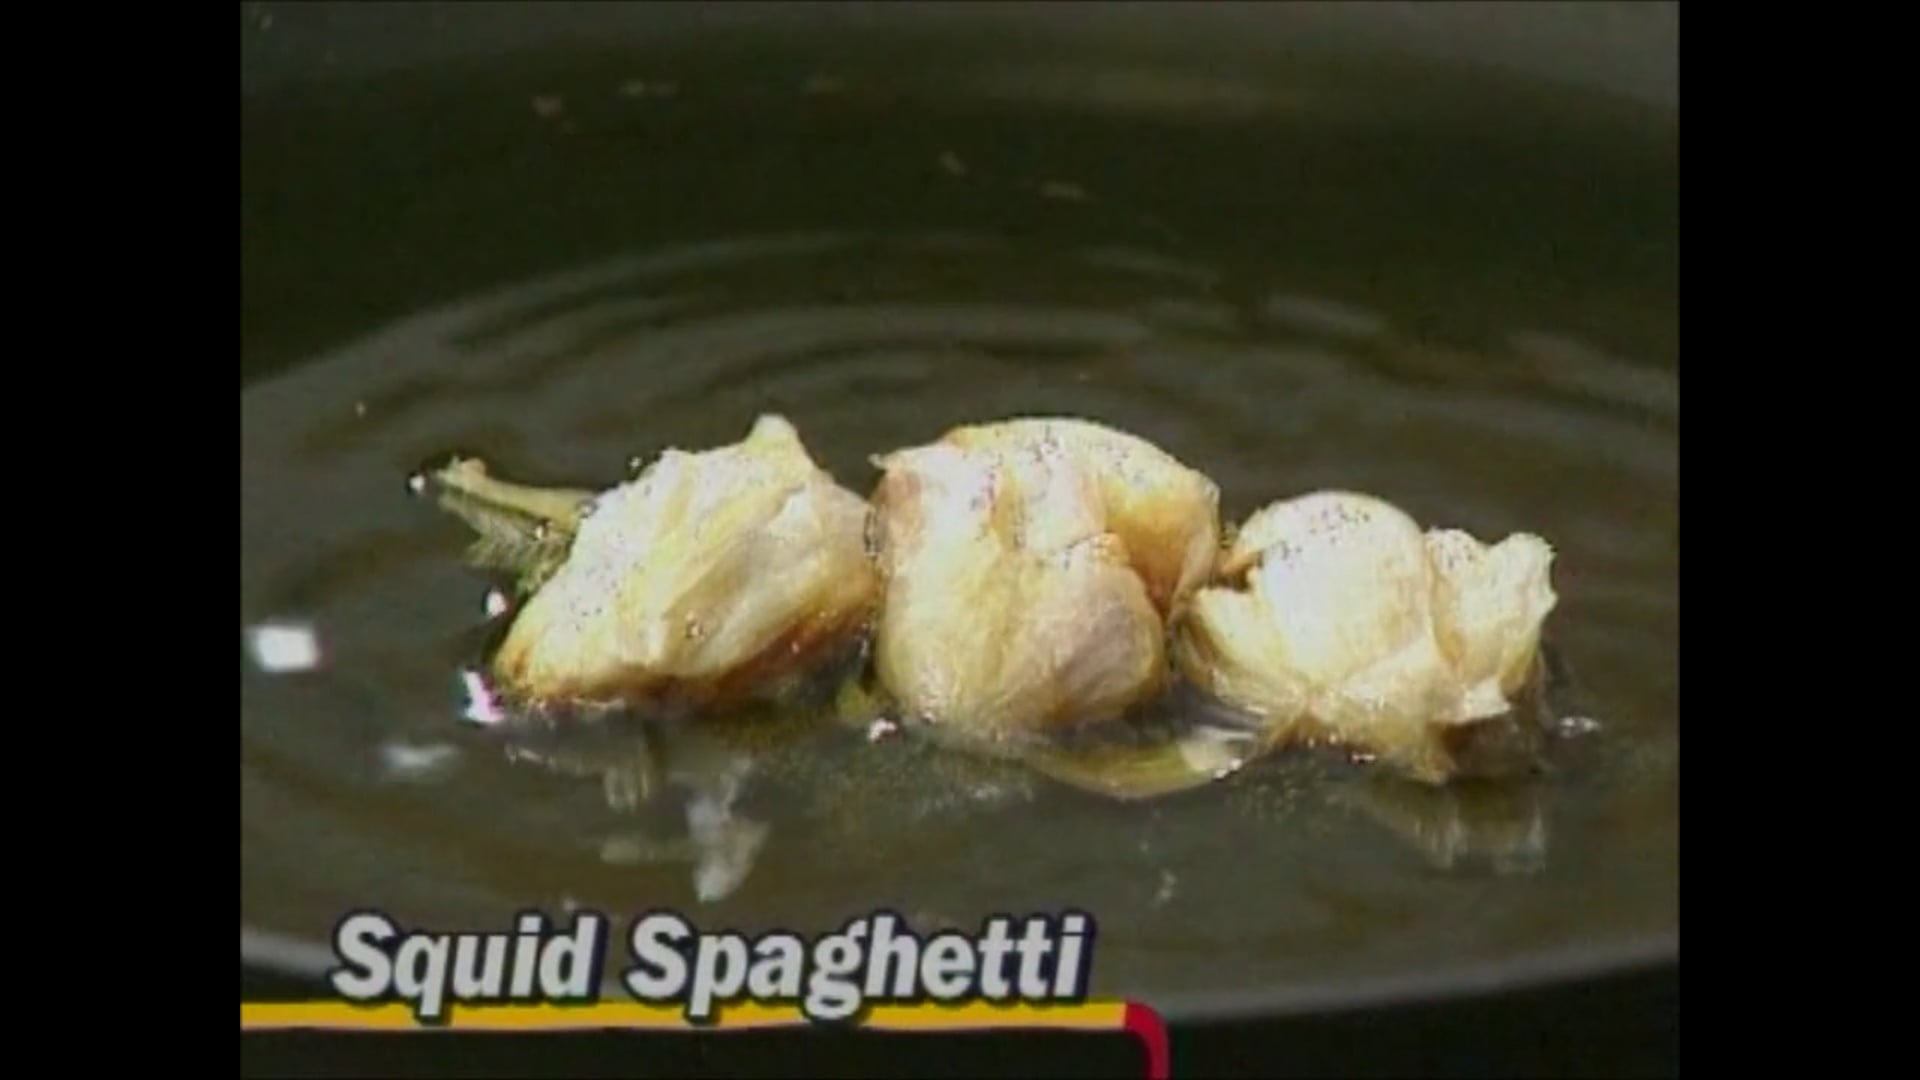 Squid Spaghetti